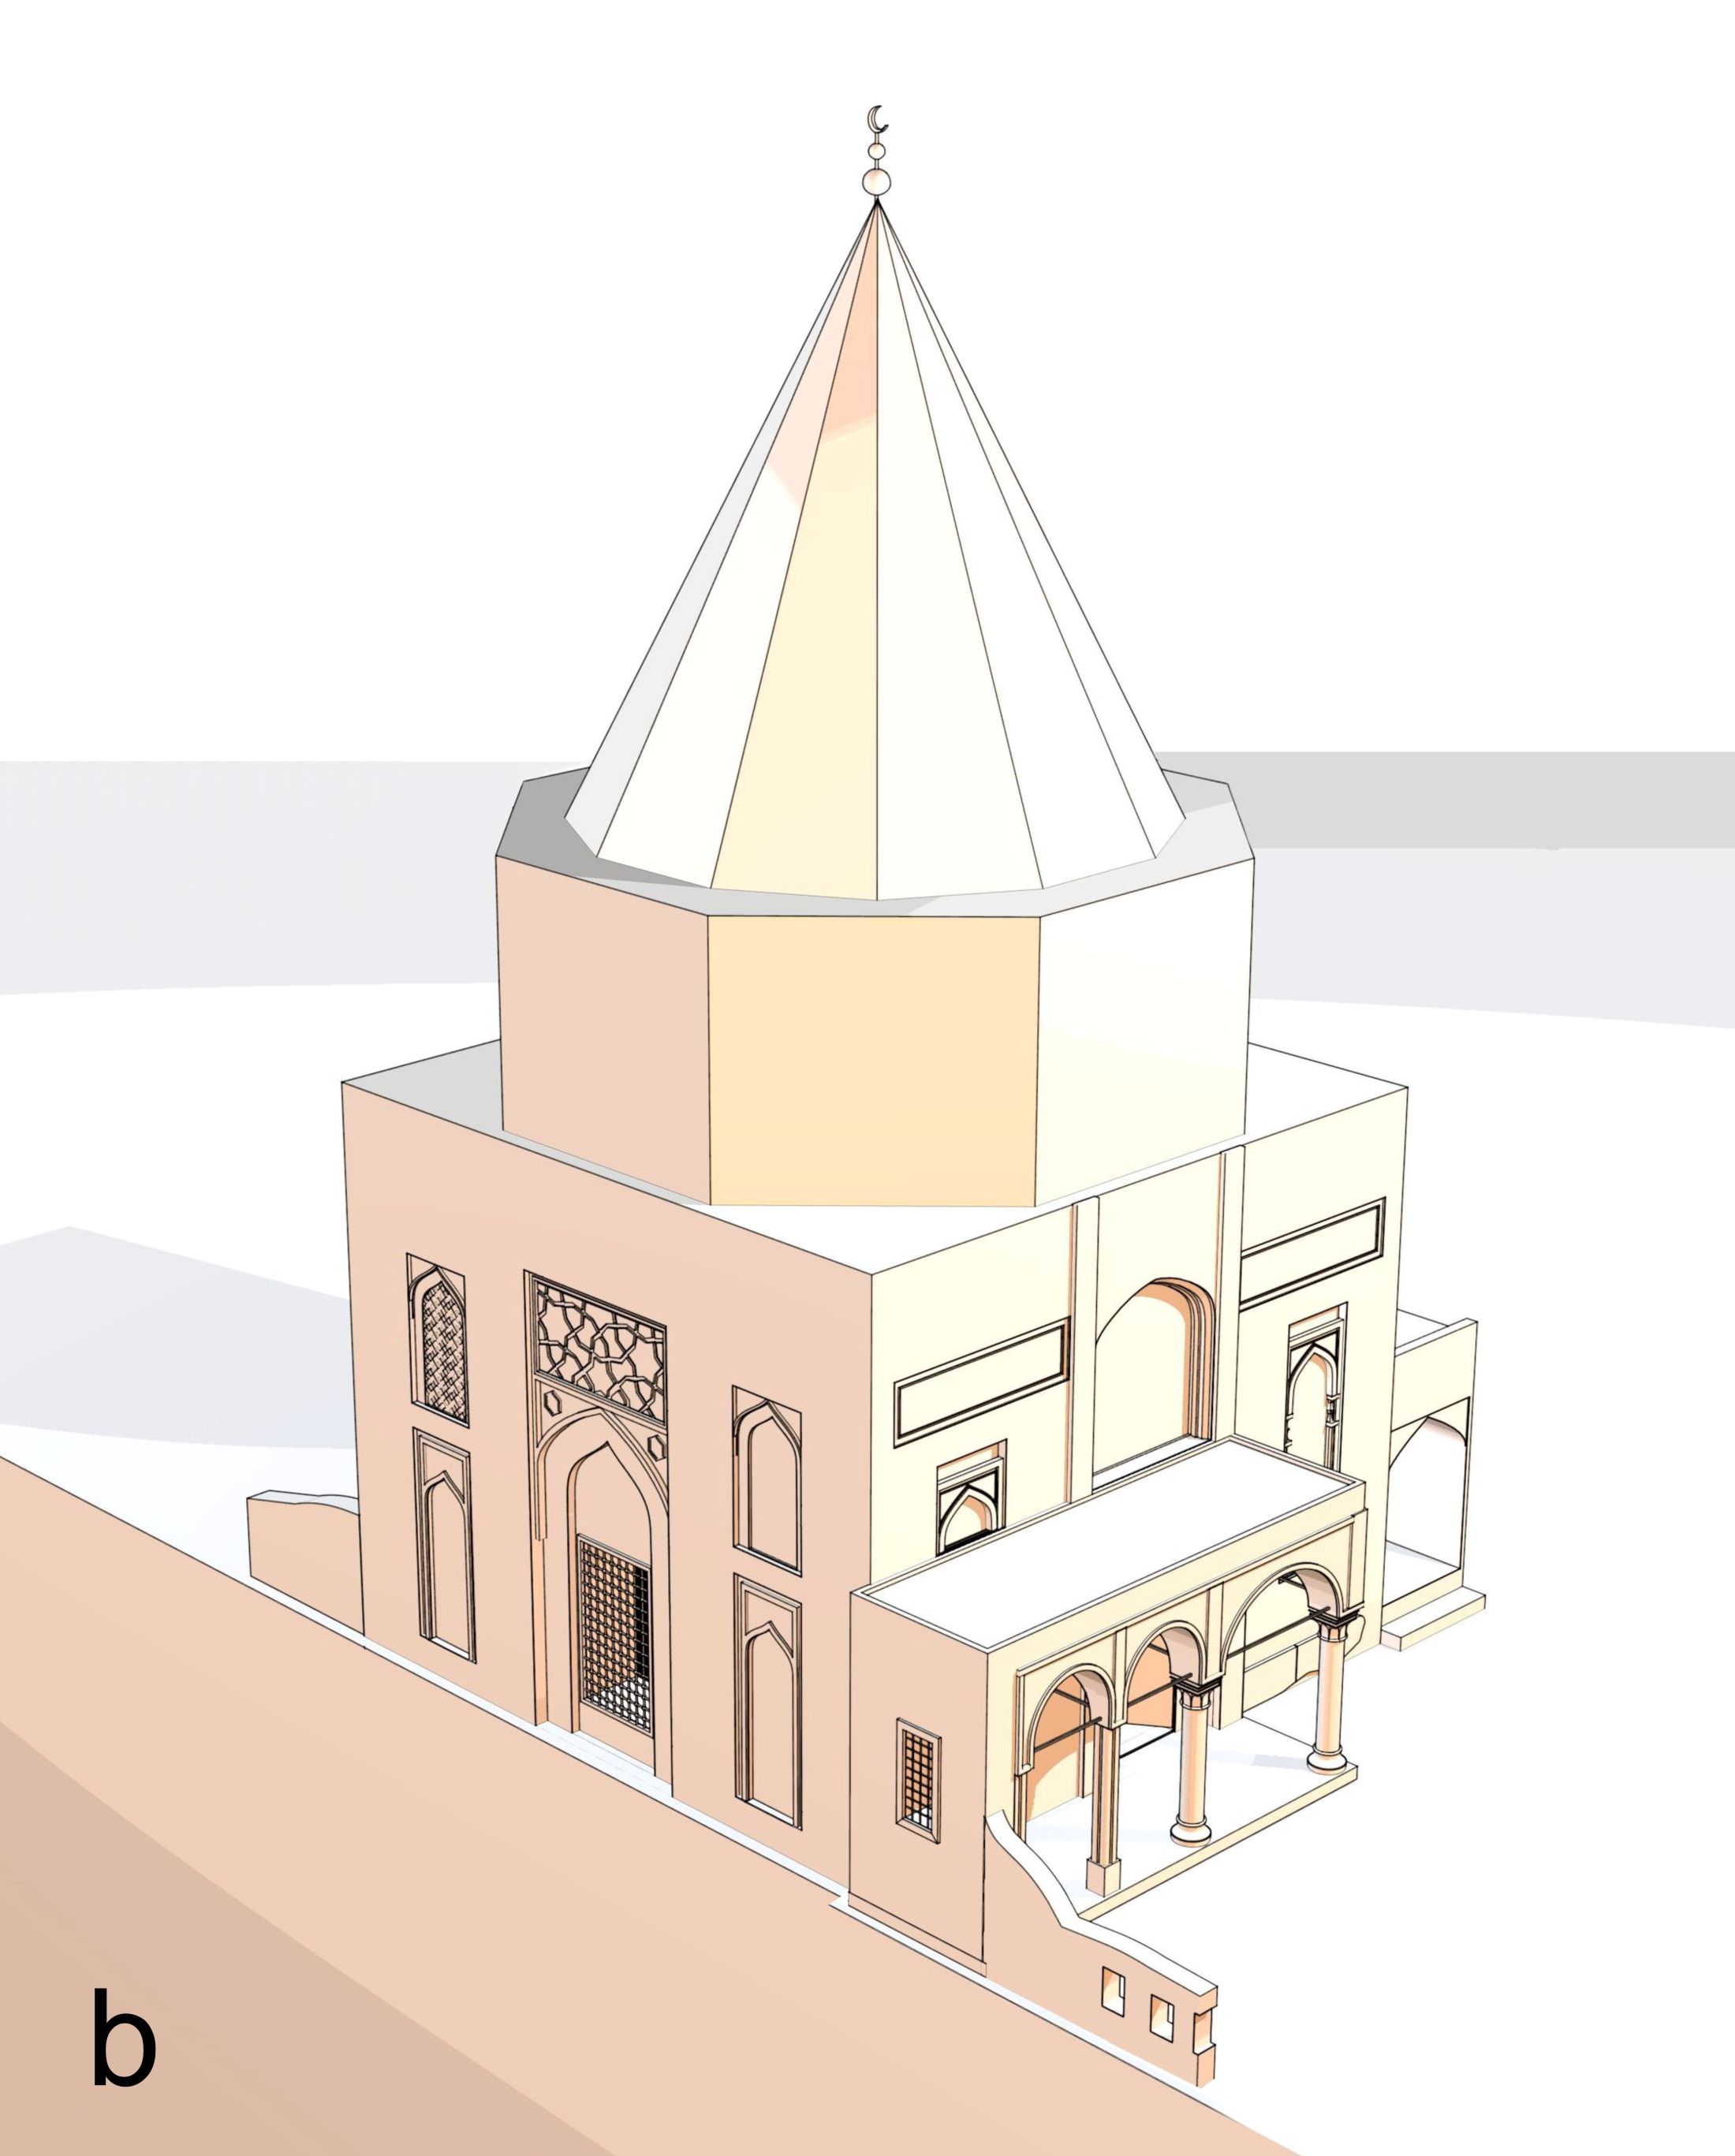 3D model of the Shrine of Yahya ibn al-Qasim.